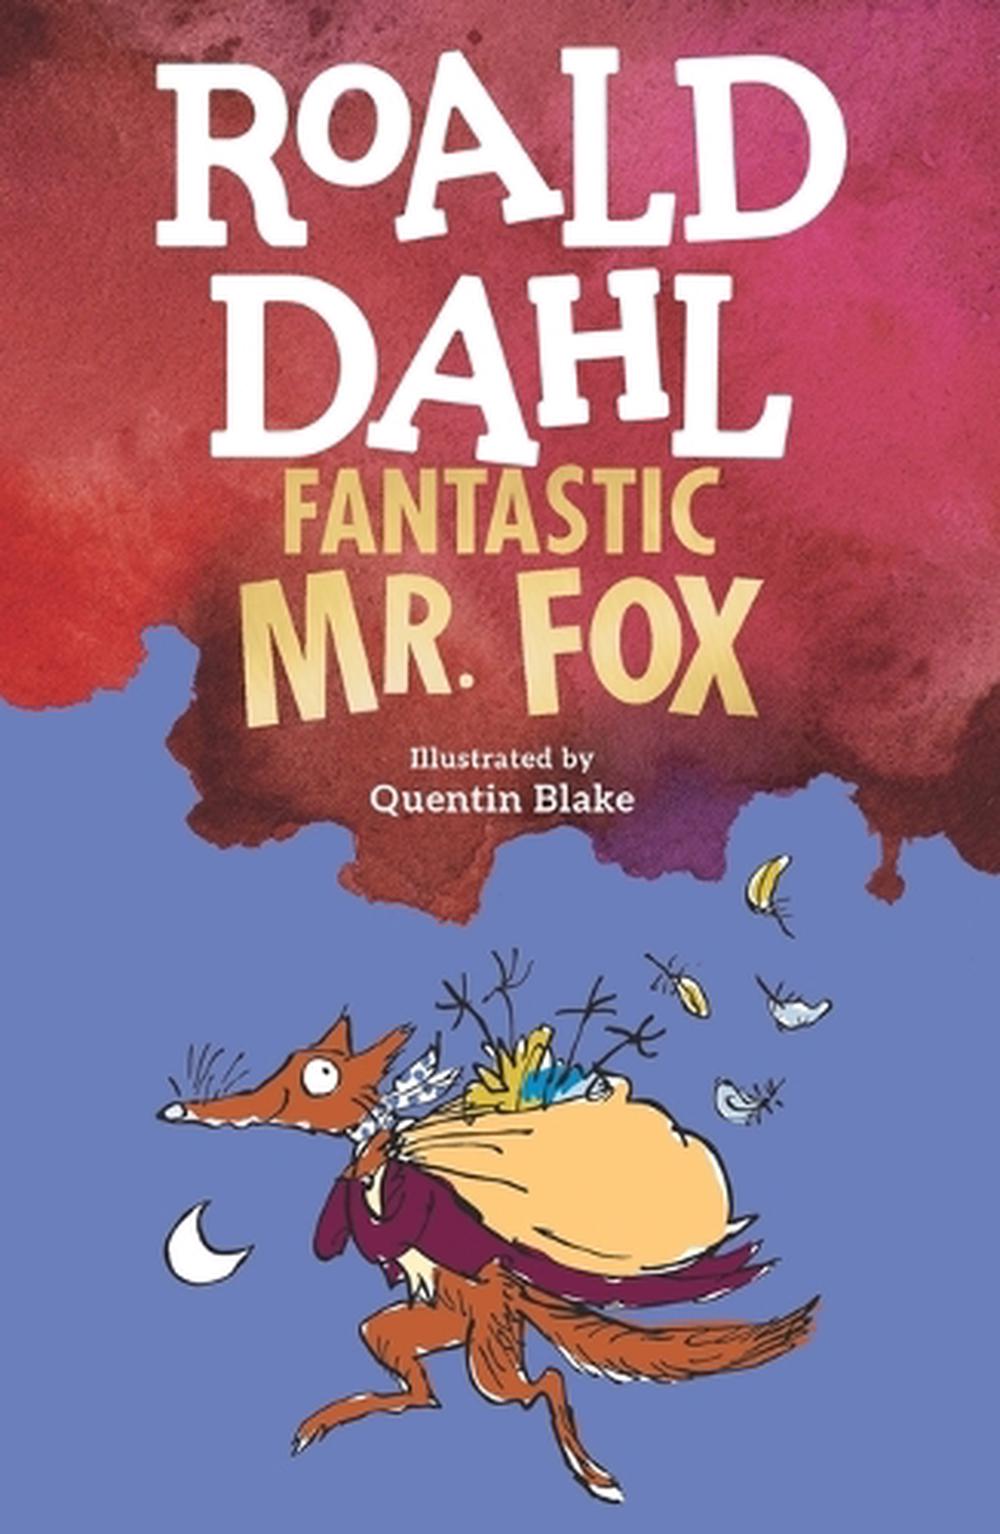 book review fantastic mr fox